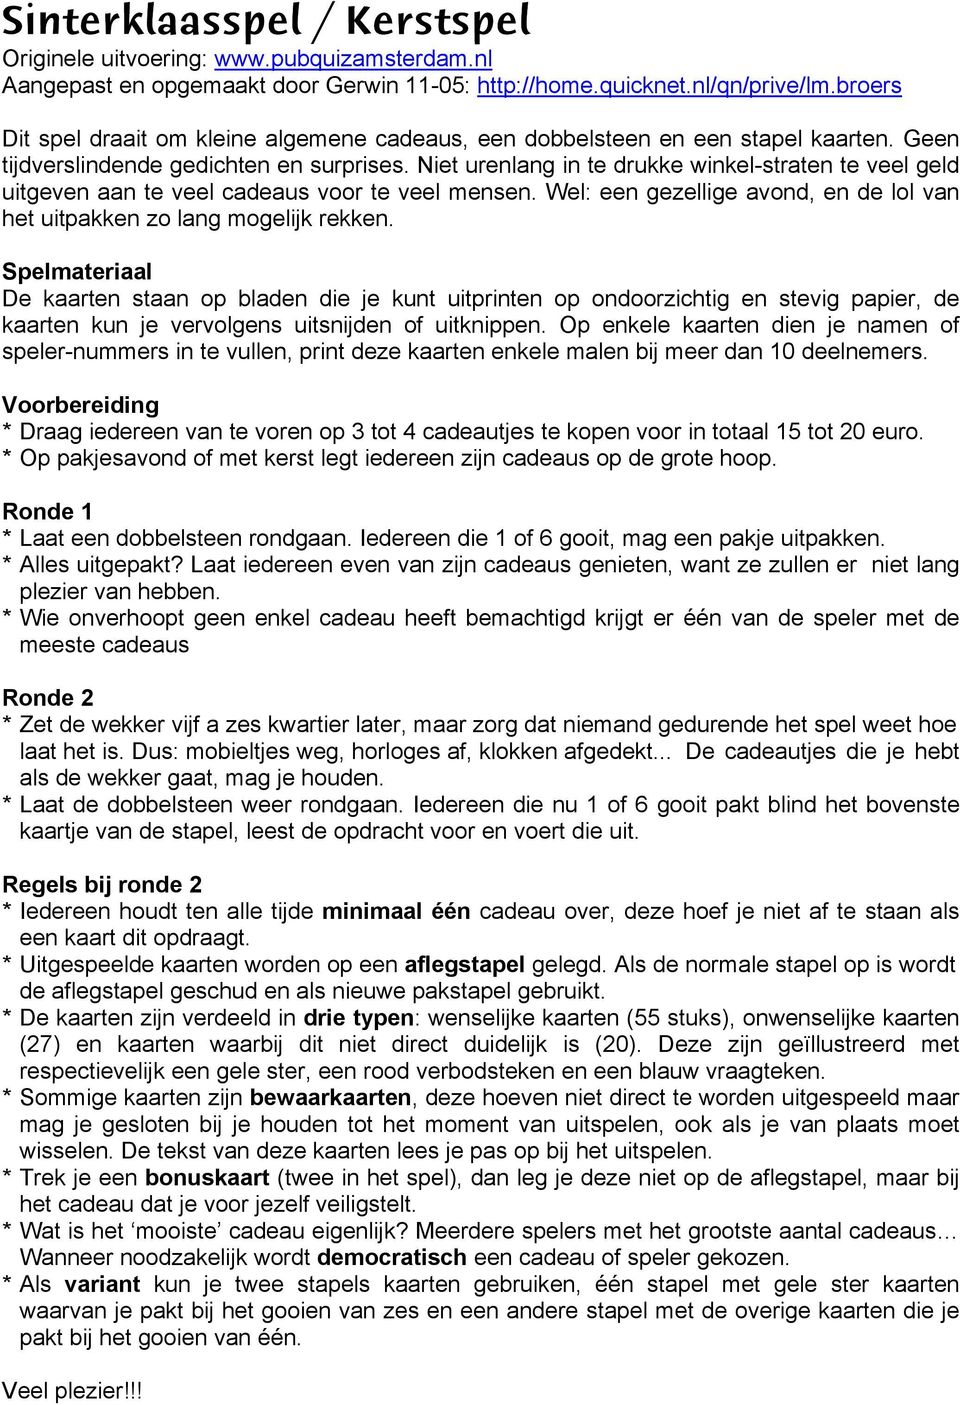 Sinterklaasspel / Kerstspel - PDF Free Download